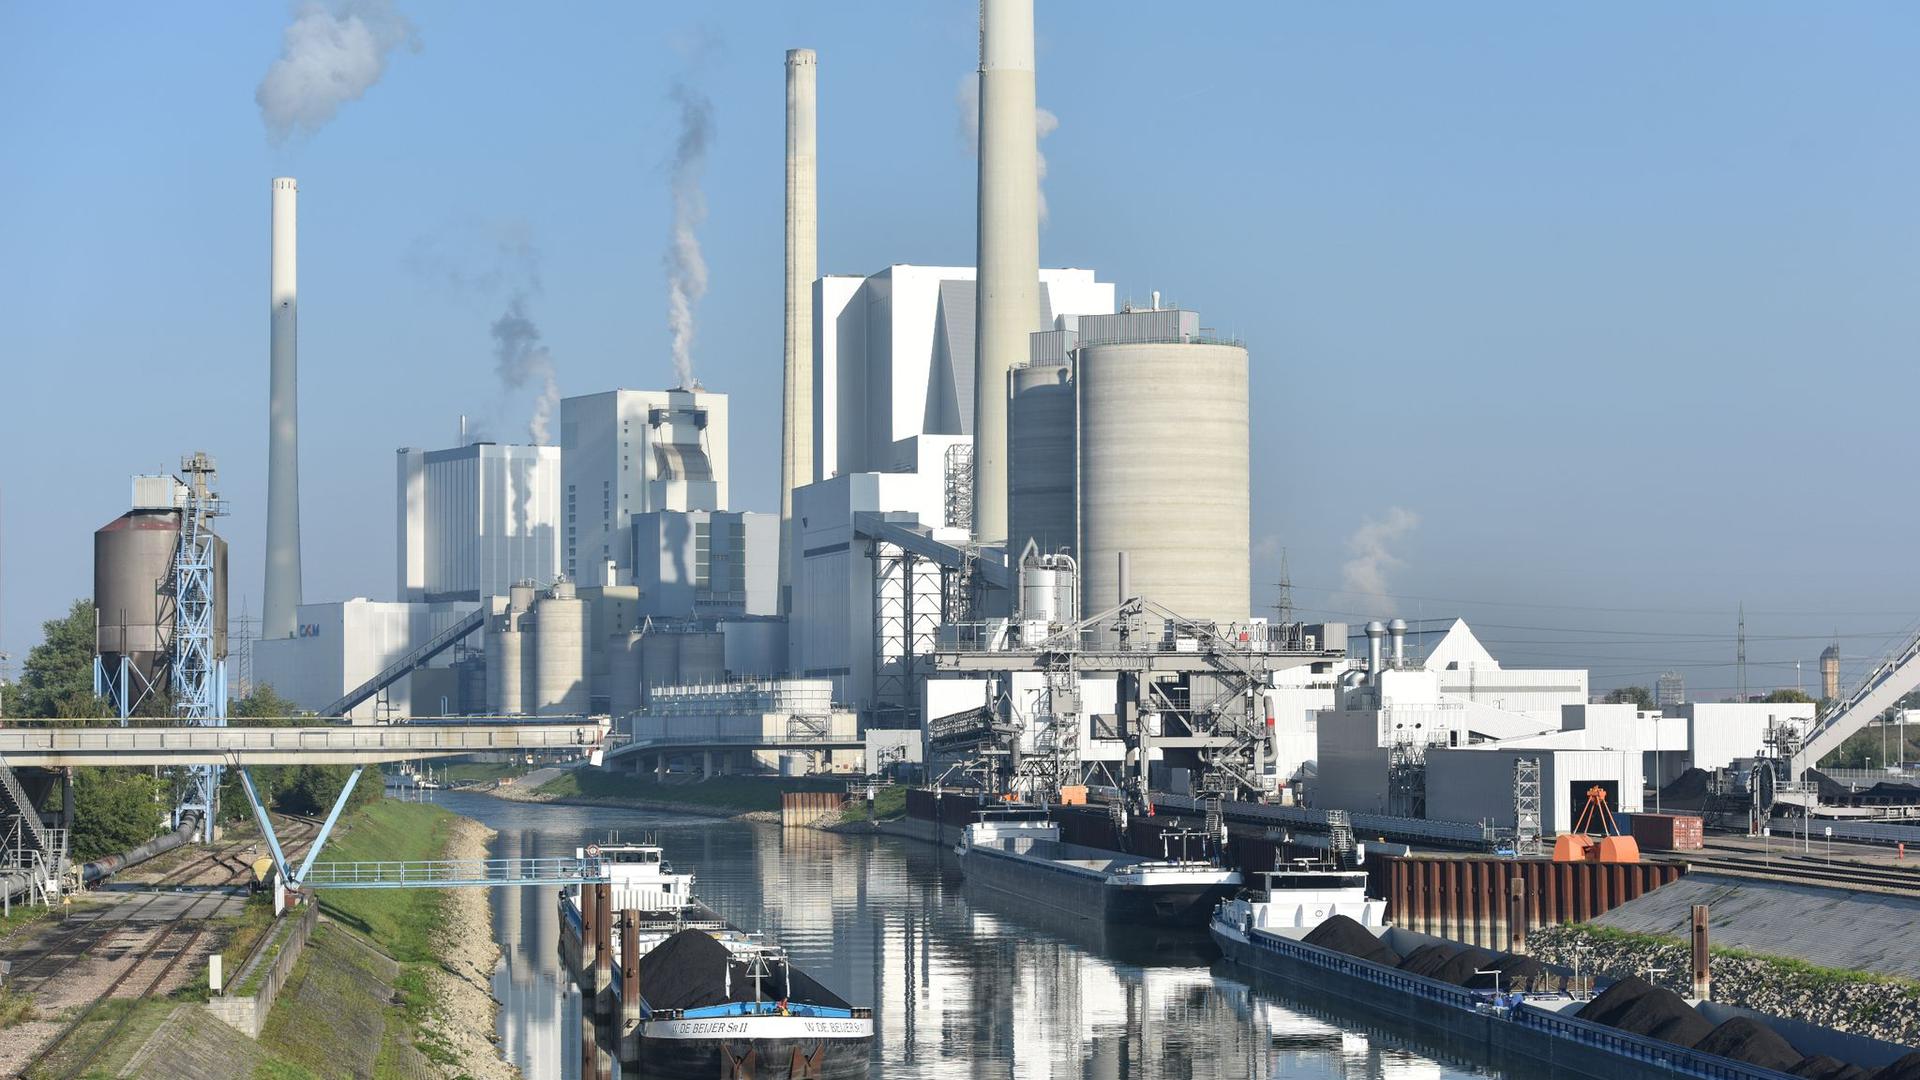 Der Block 9 des Großkraftwerkes Mannheim ist am Rhein vor weiteren Kraftwerksblöcken zu sehen.